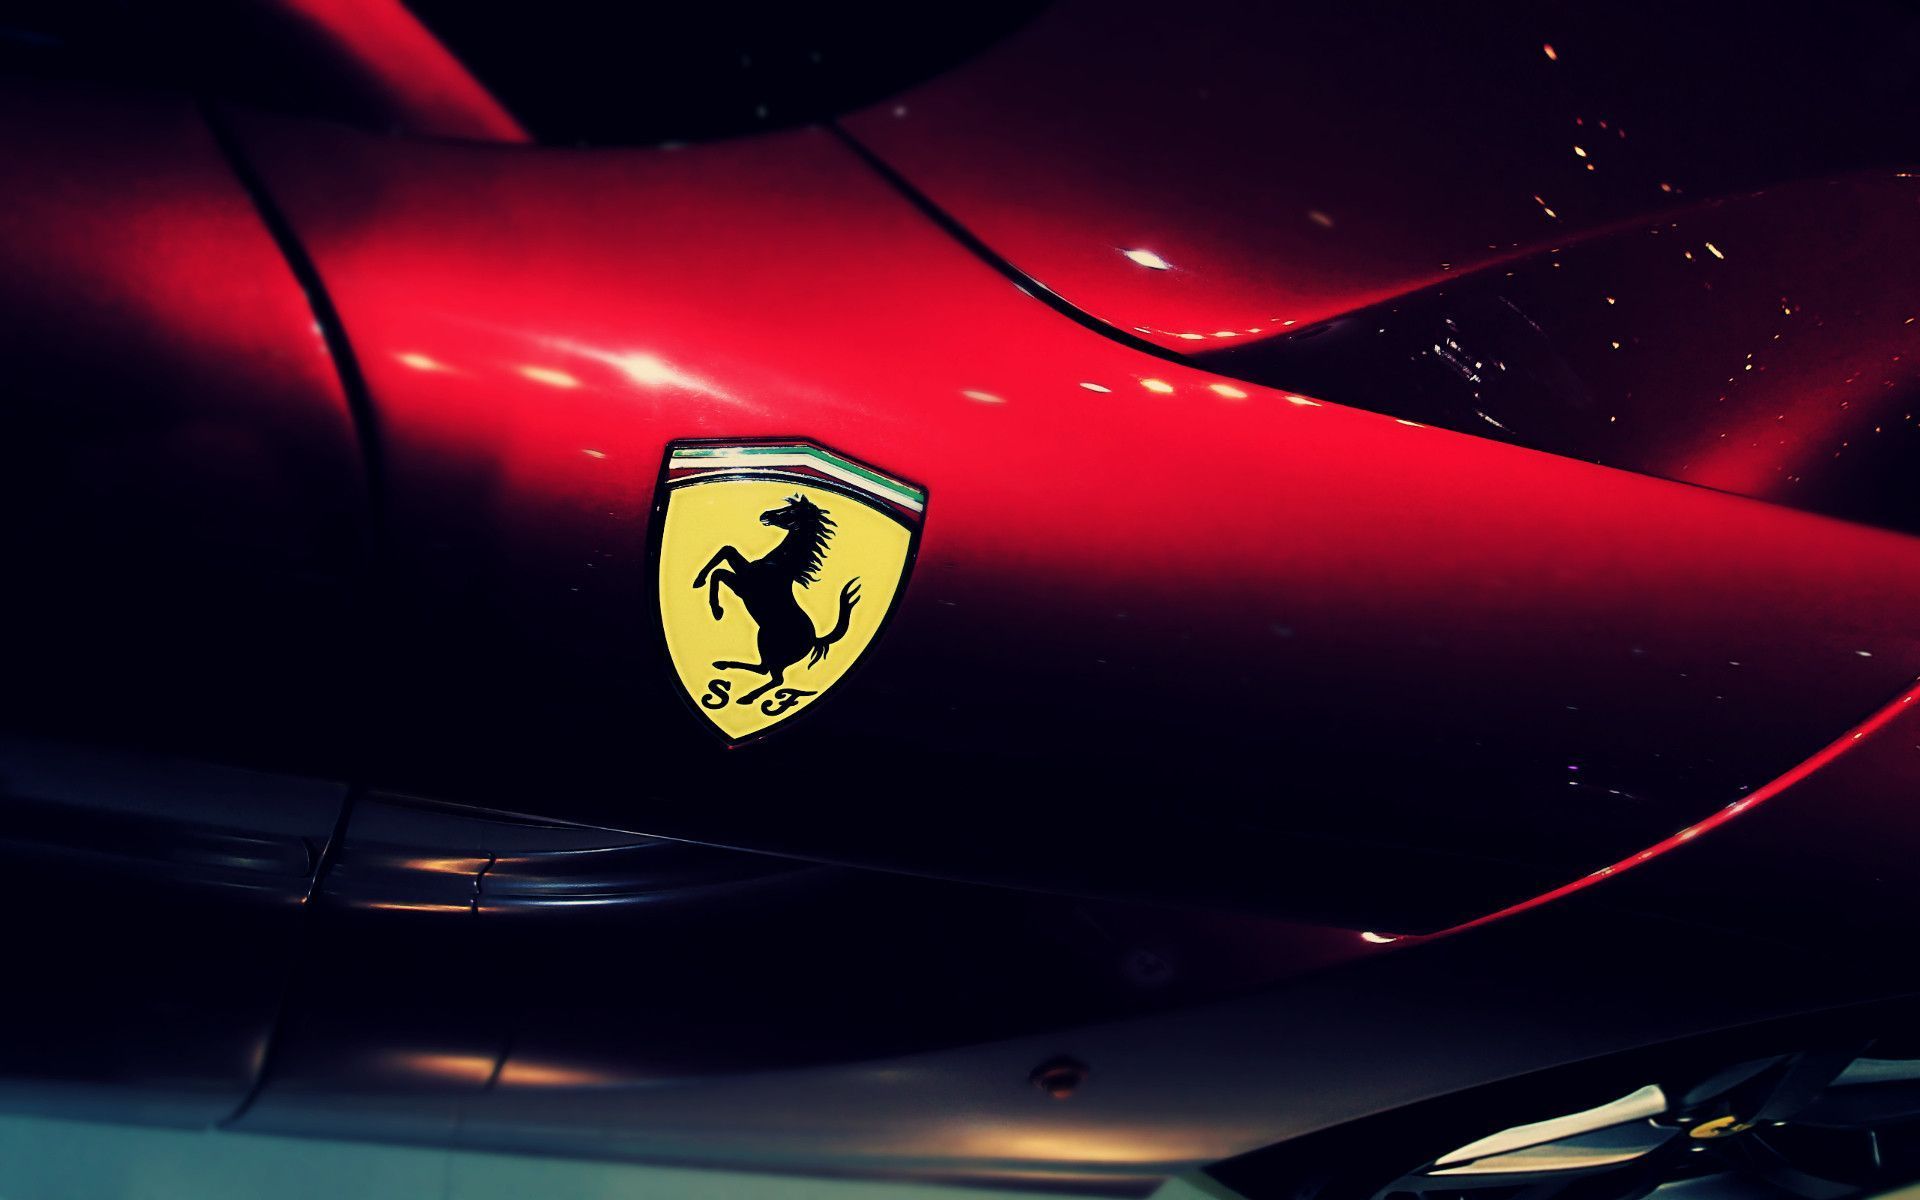 Ferrari Fondos de pantalla Full Hd | Fondos de vehículos | Logotipo de Ferrari